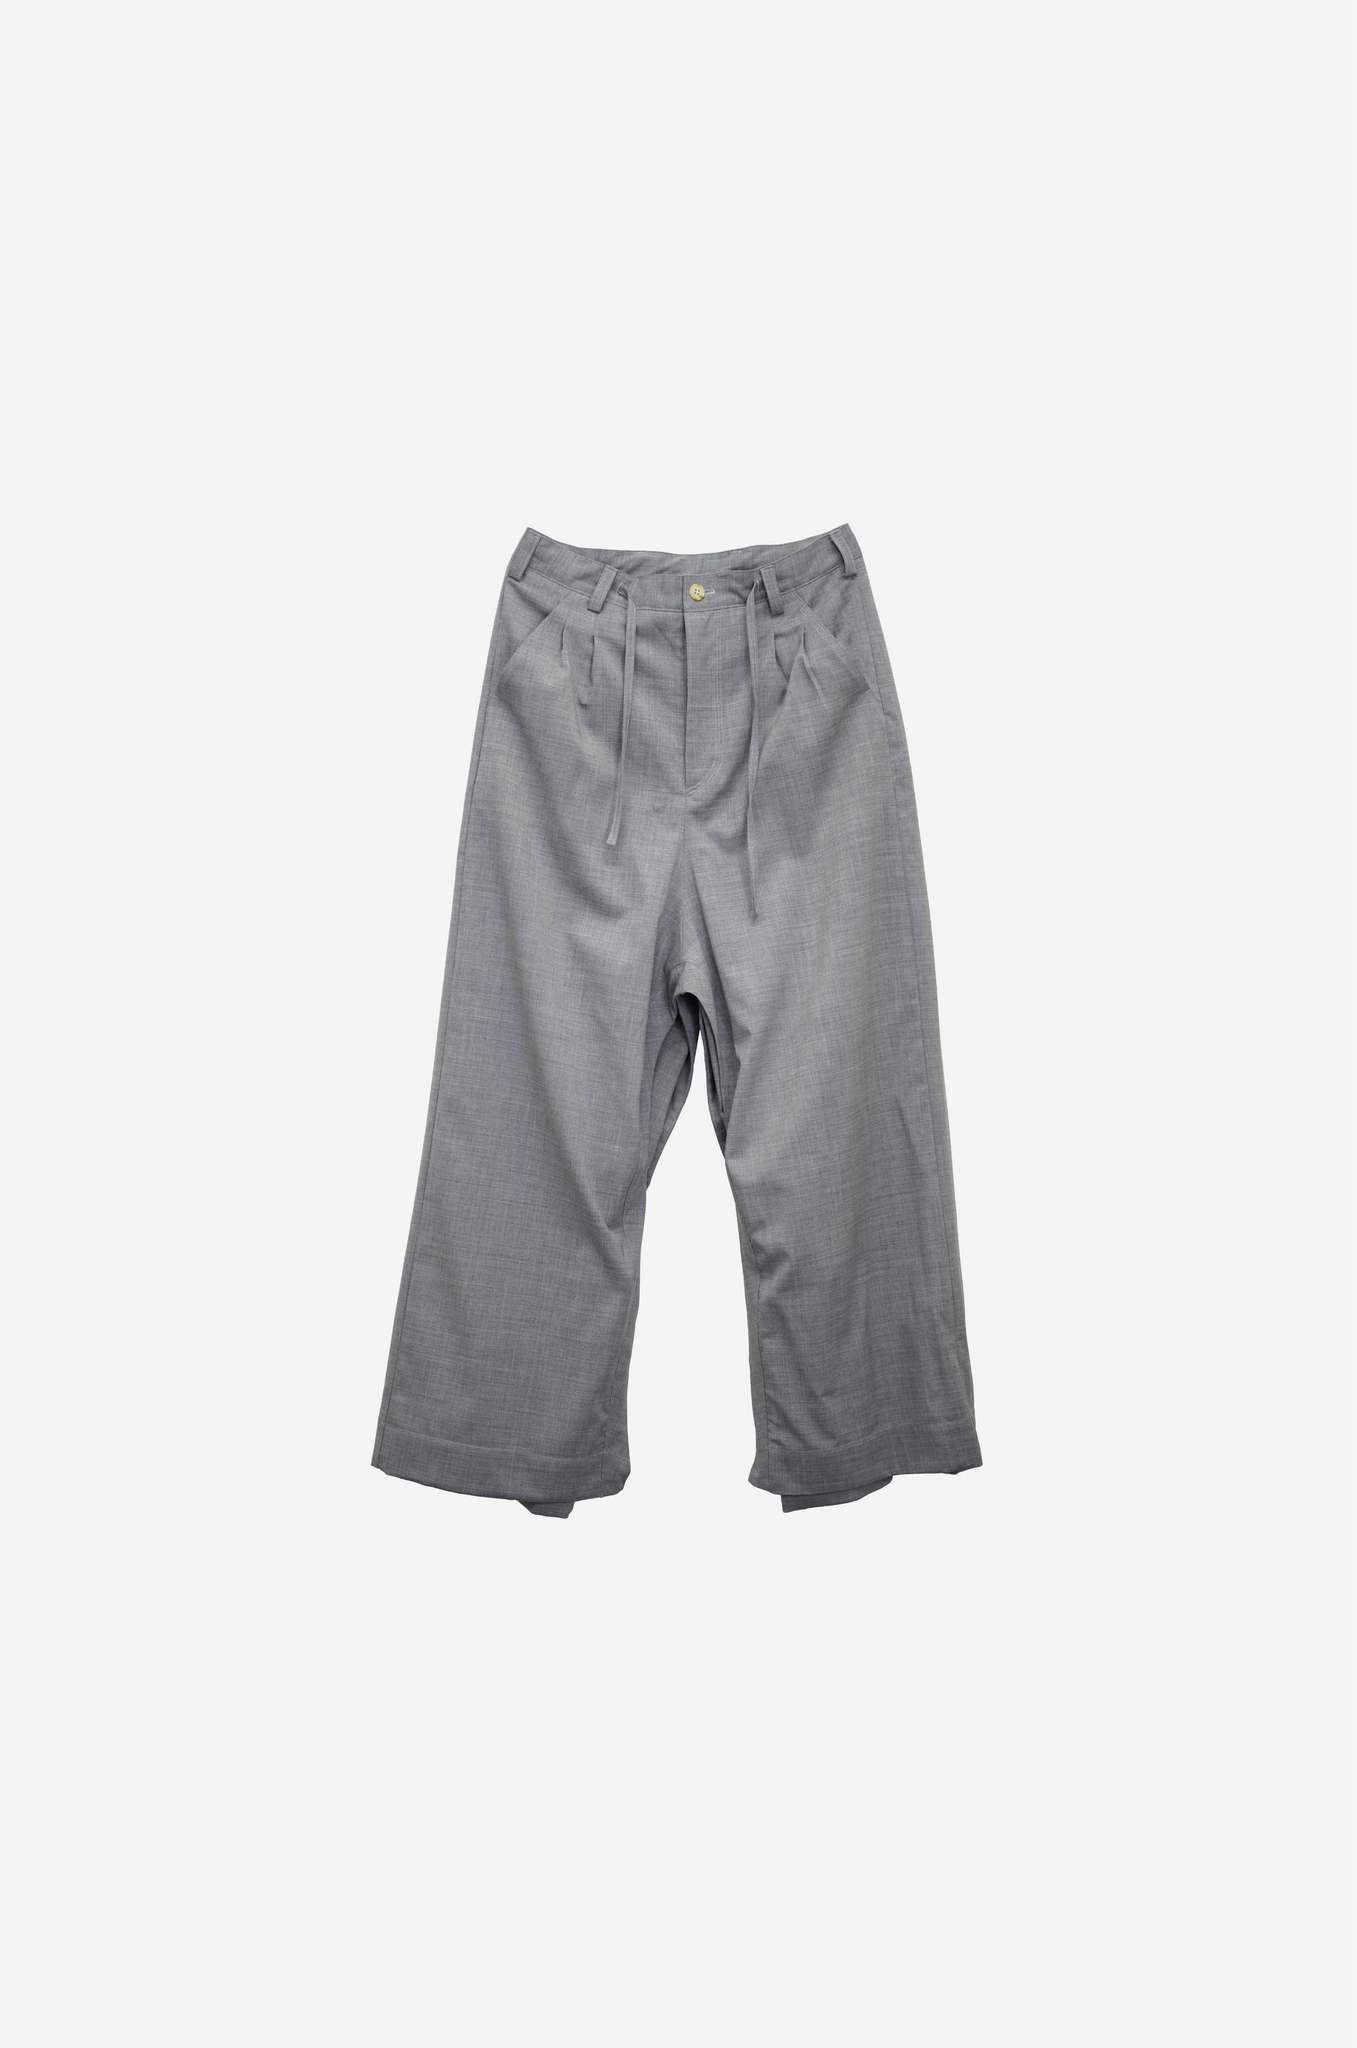 Dual wide pants "Grey"